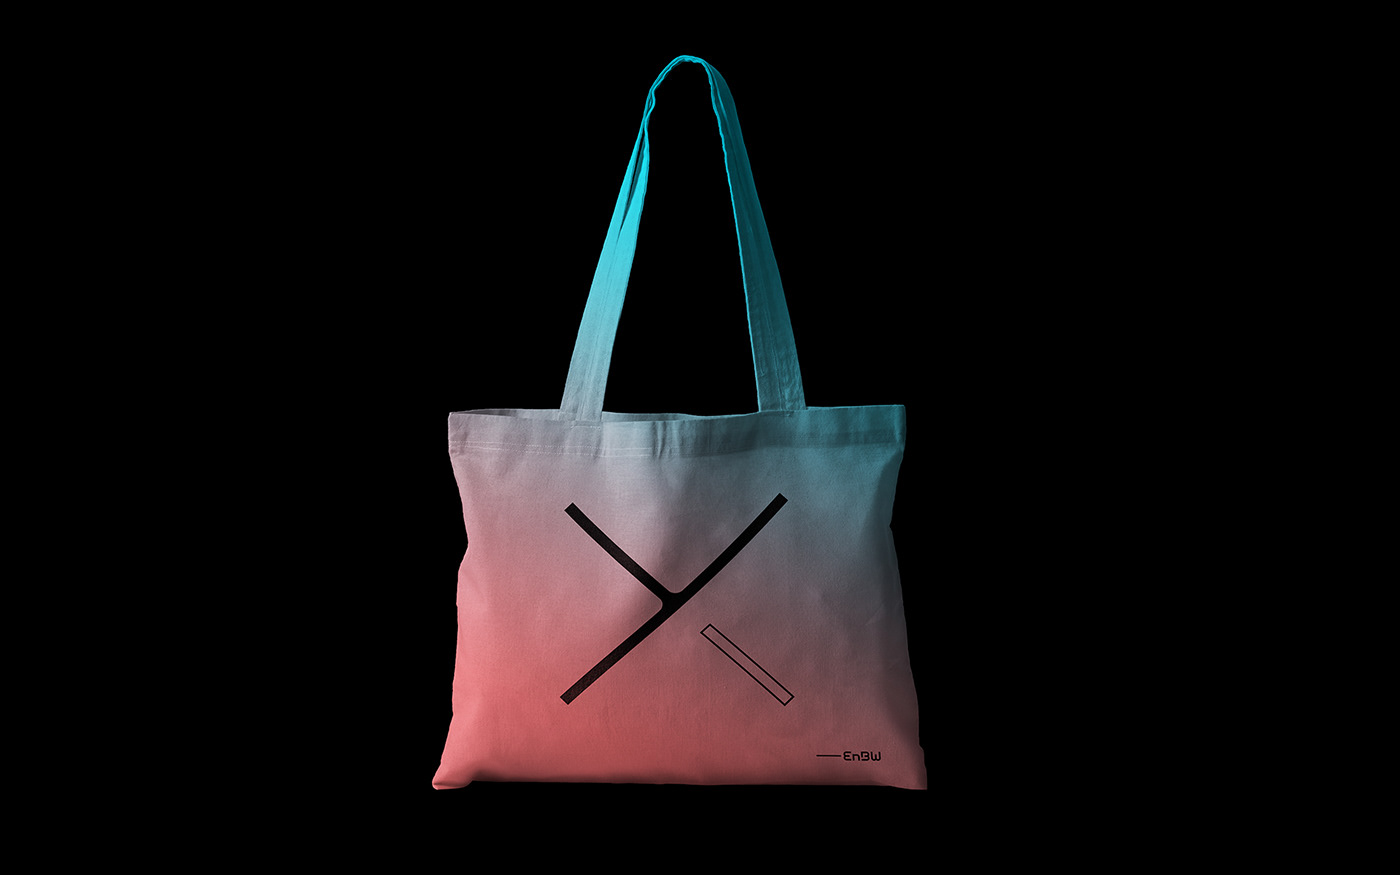 Image may contain: handbag, shopping bag and luggage and bags